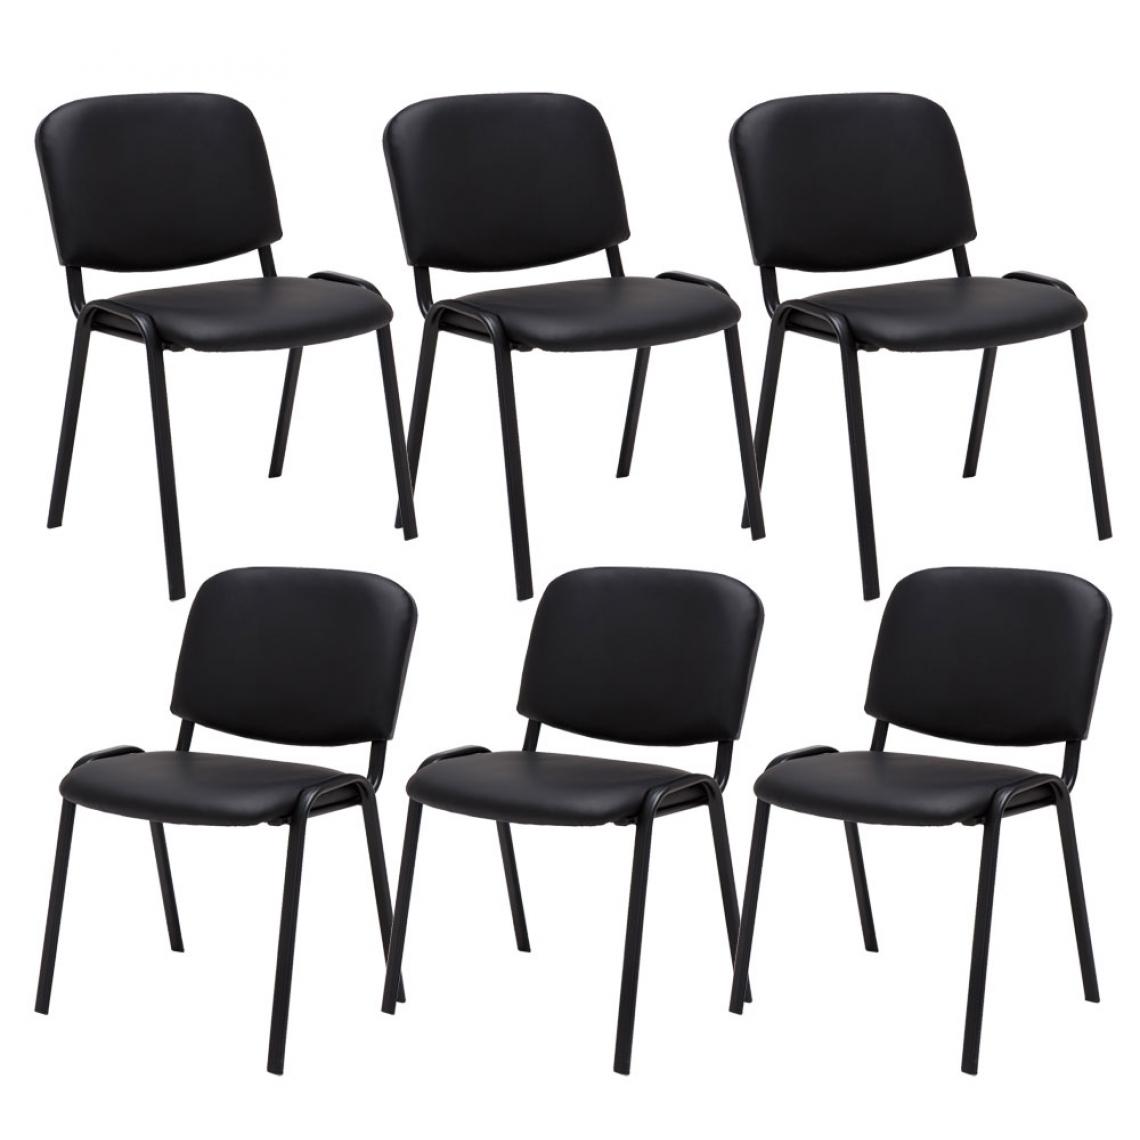 Icaverne - Admirable Lot de 6 chaises visiteurs famille Bamako en cuir artificiel couleur noir - Chaises